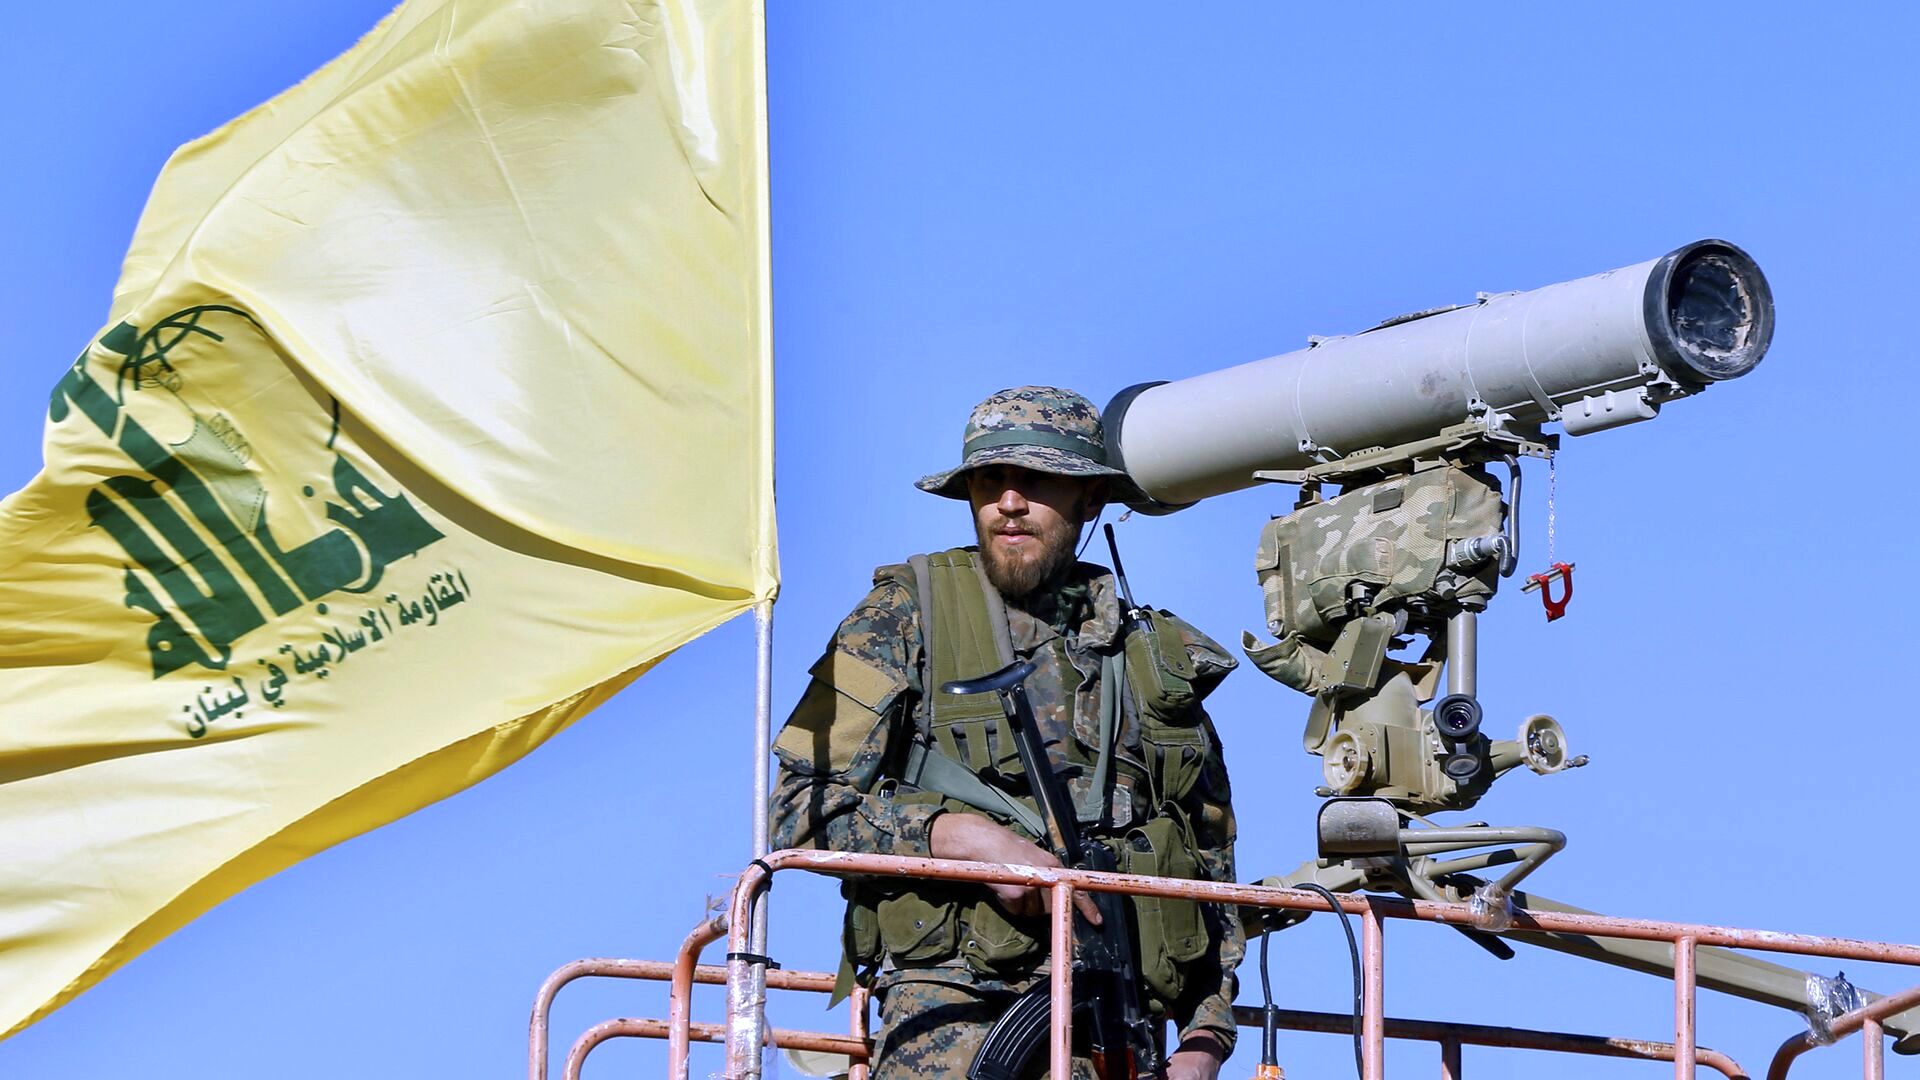  حزب الله با موشک پایگاه های اسرائیل را هدف قرار داد